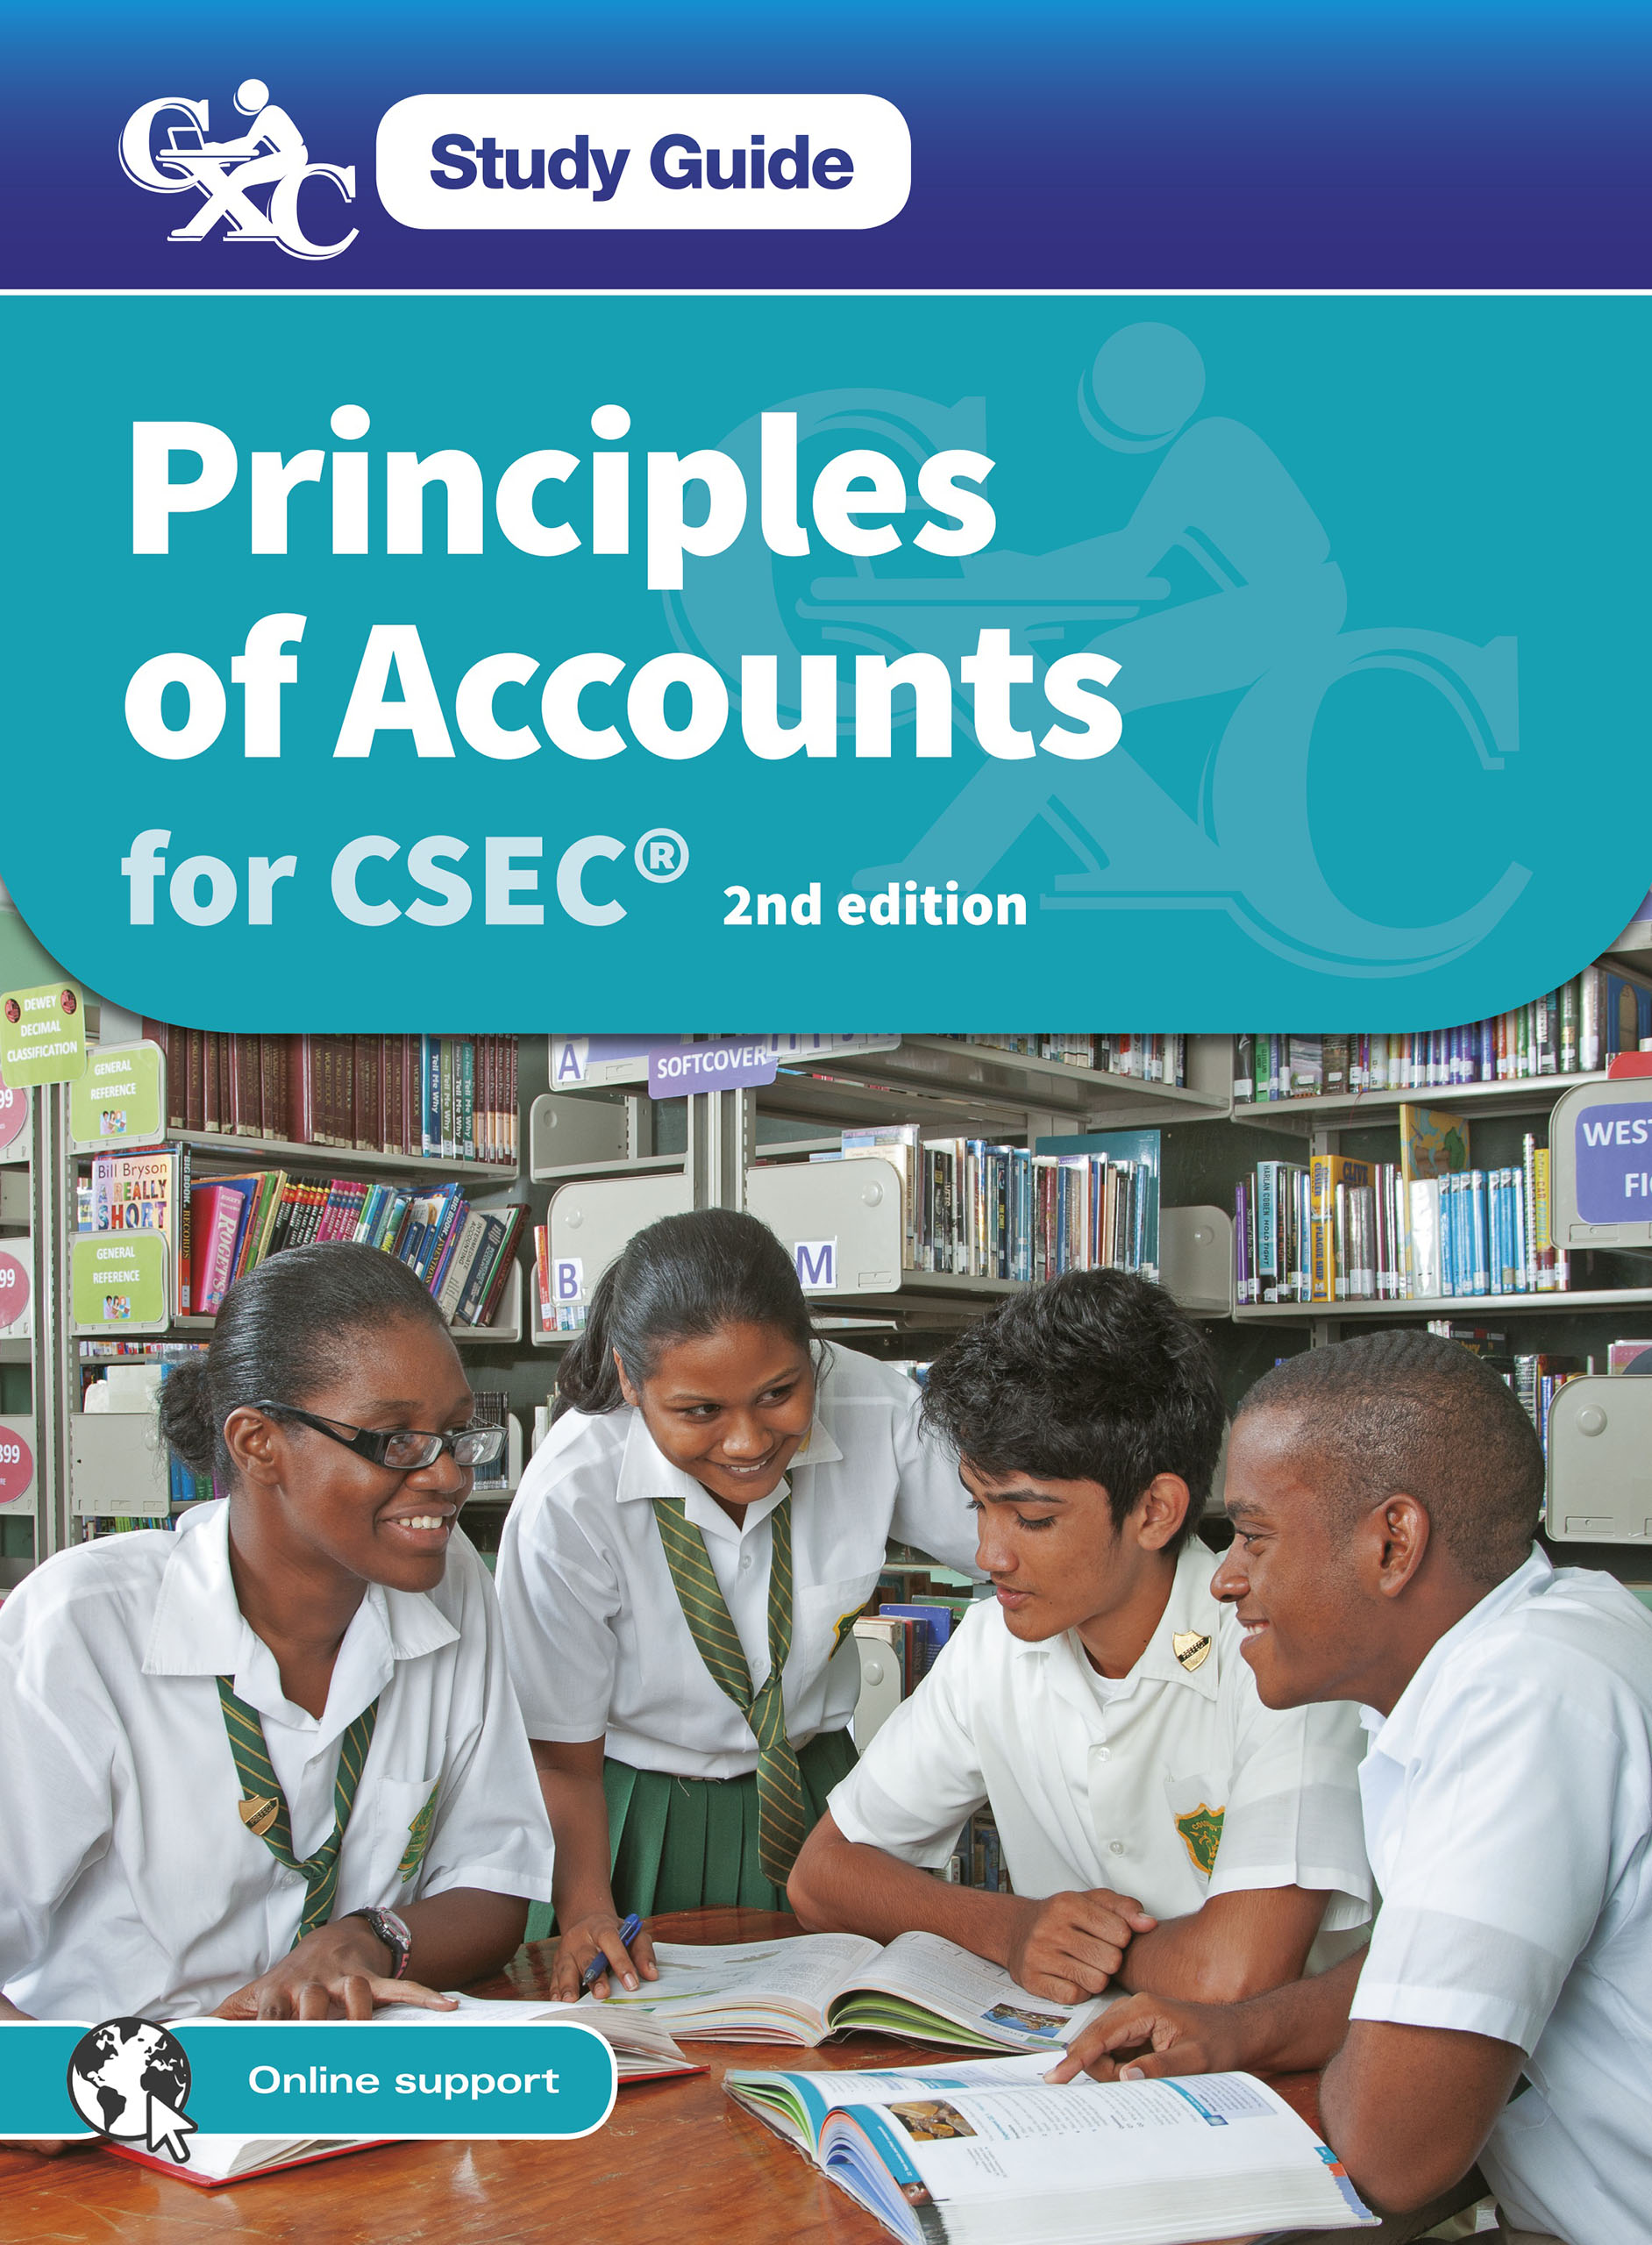 CXC Study Guide: Principles of Accounts for CSEC